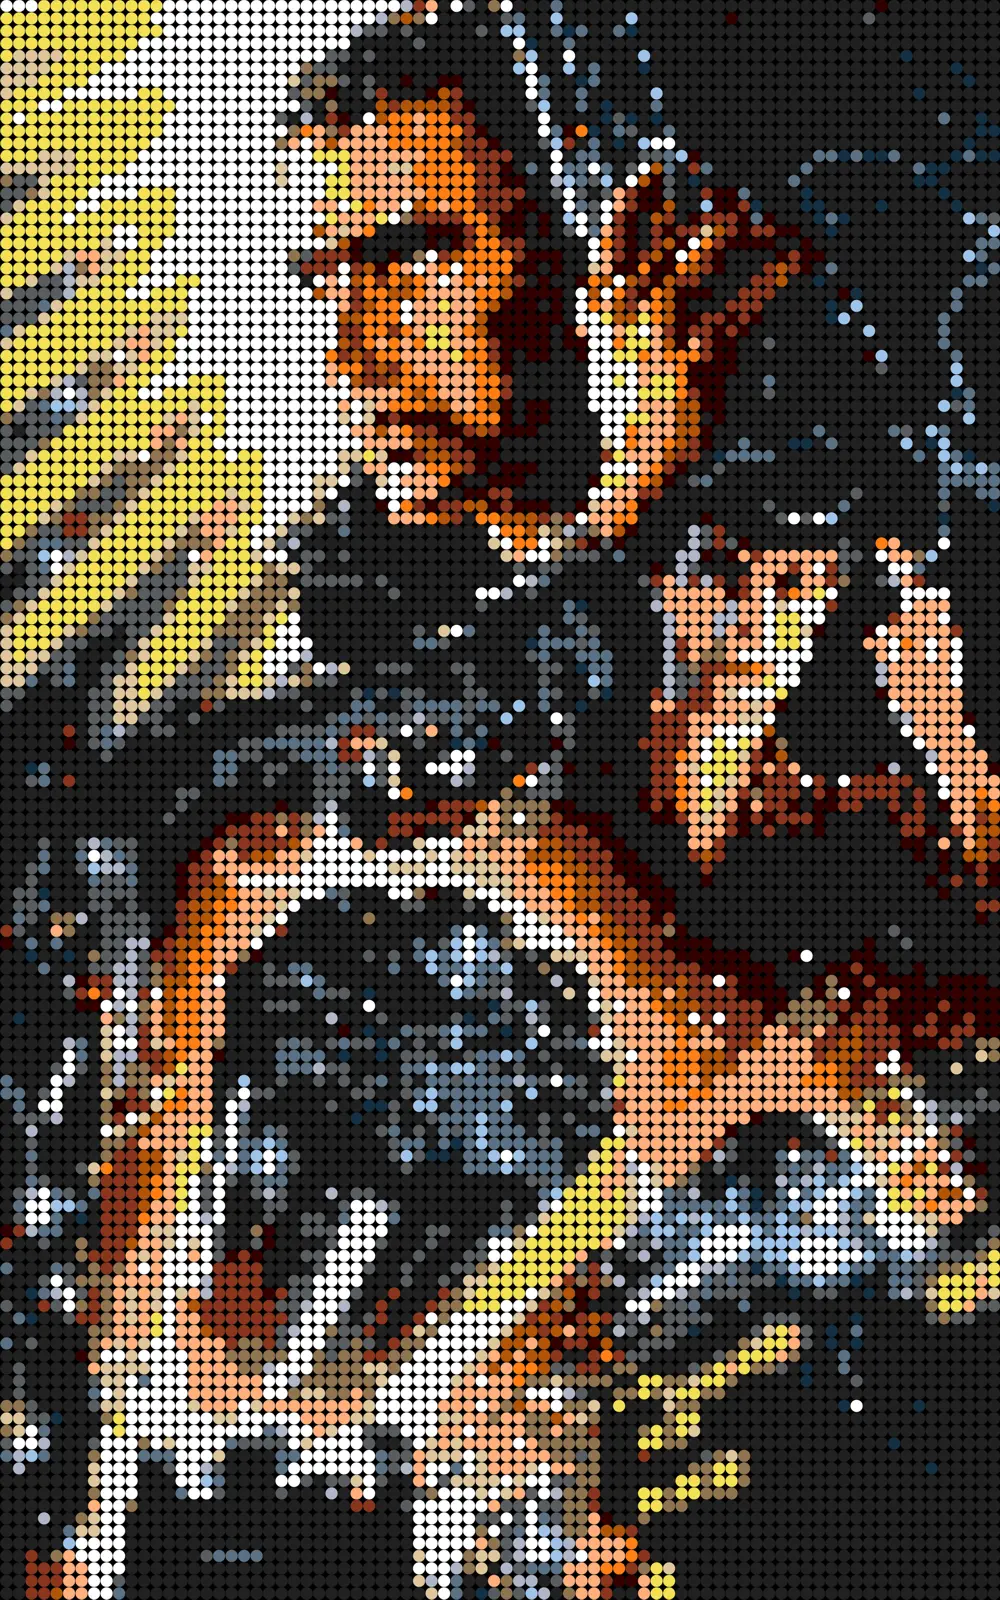 Blade Runner Pixel Art Mosaic